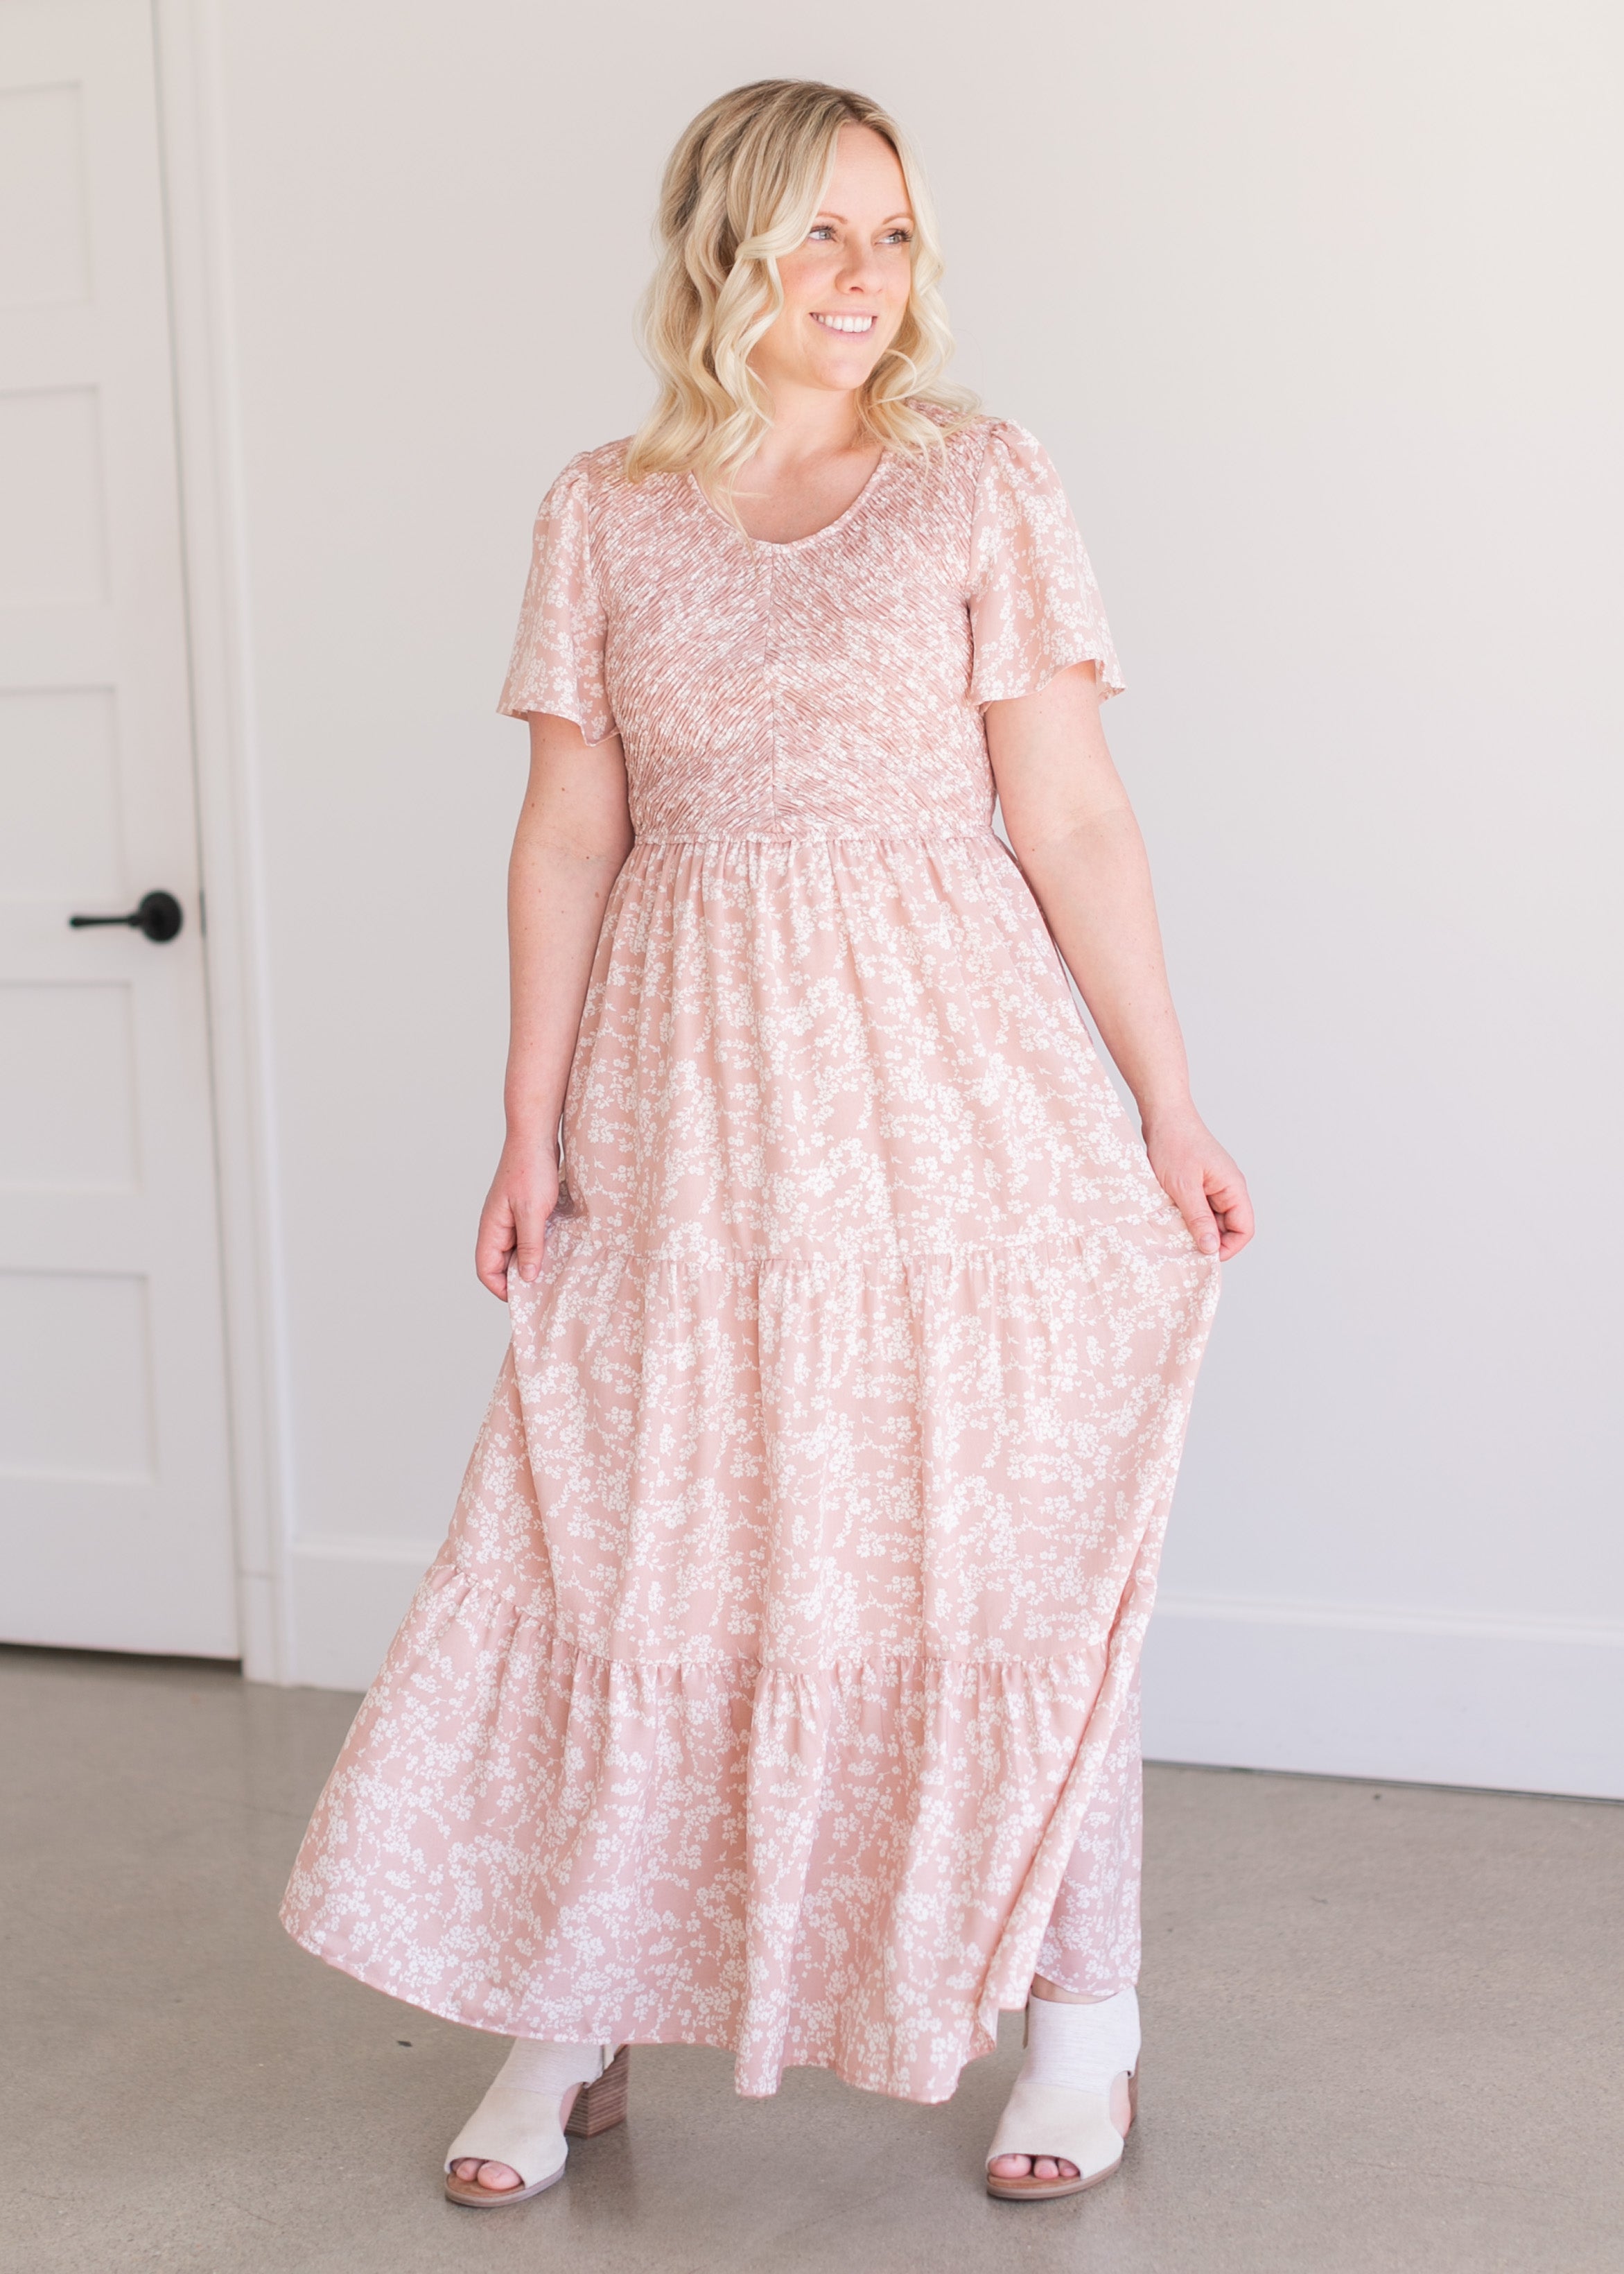 Blush Pink Smocked Floral Maxi Dress - FINAL SALE – Inherit Co.